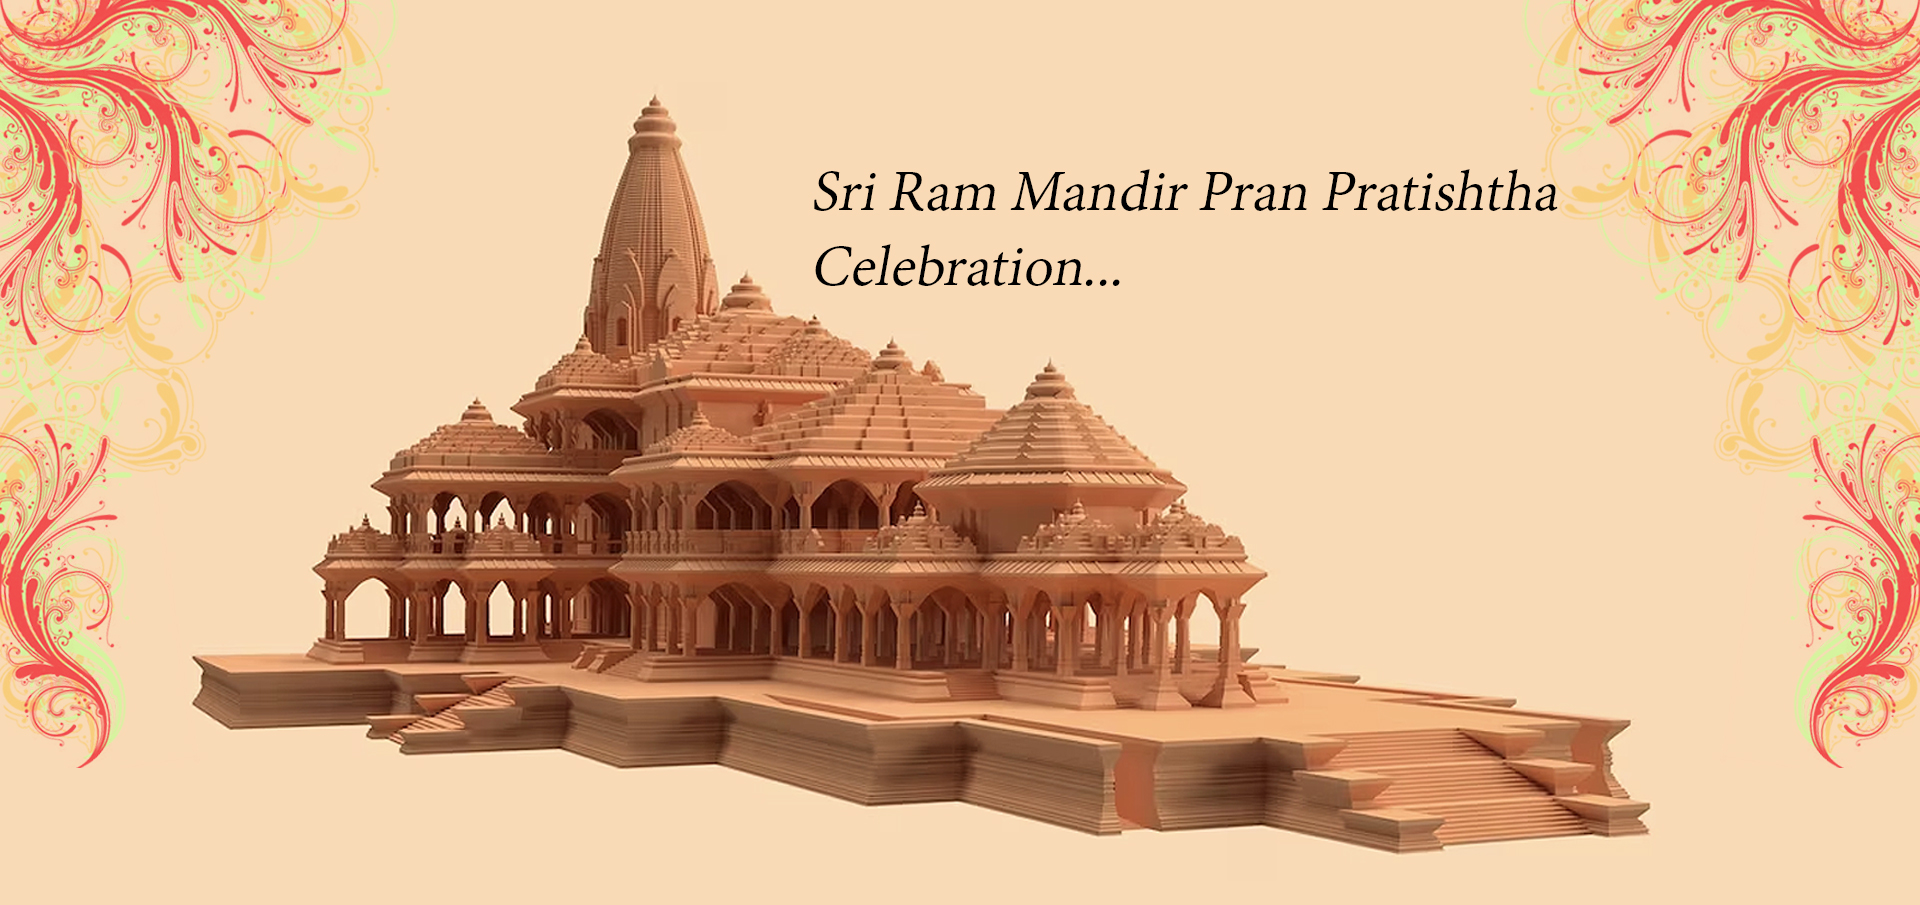 Shri Ram Mandir Pran Pratishtha Celebration